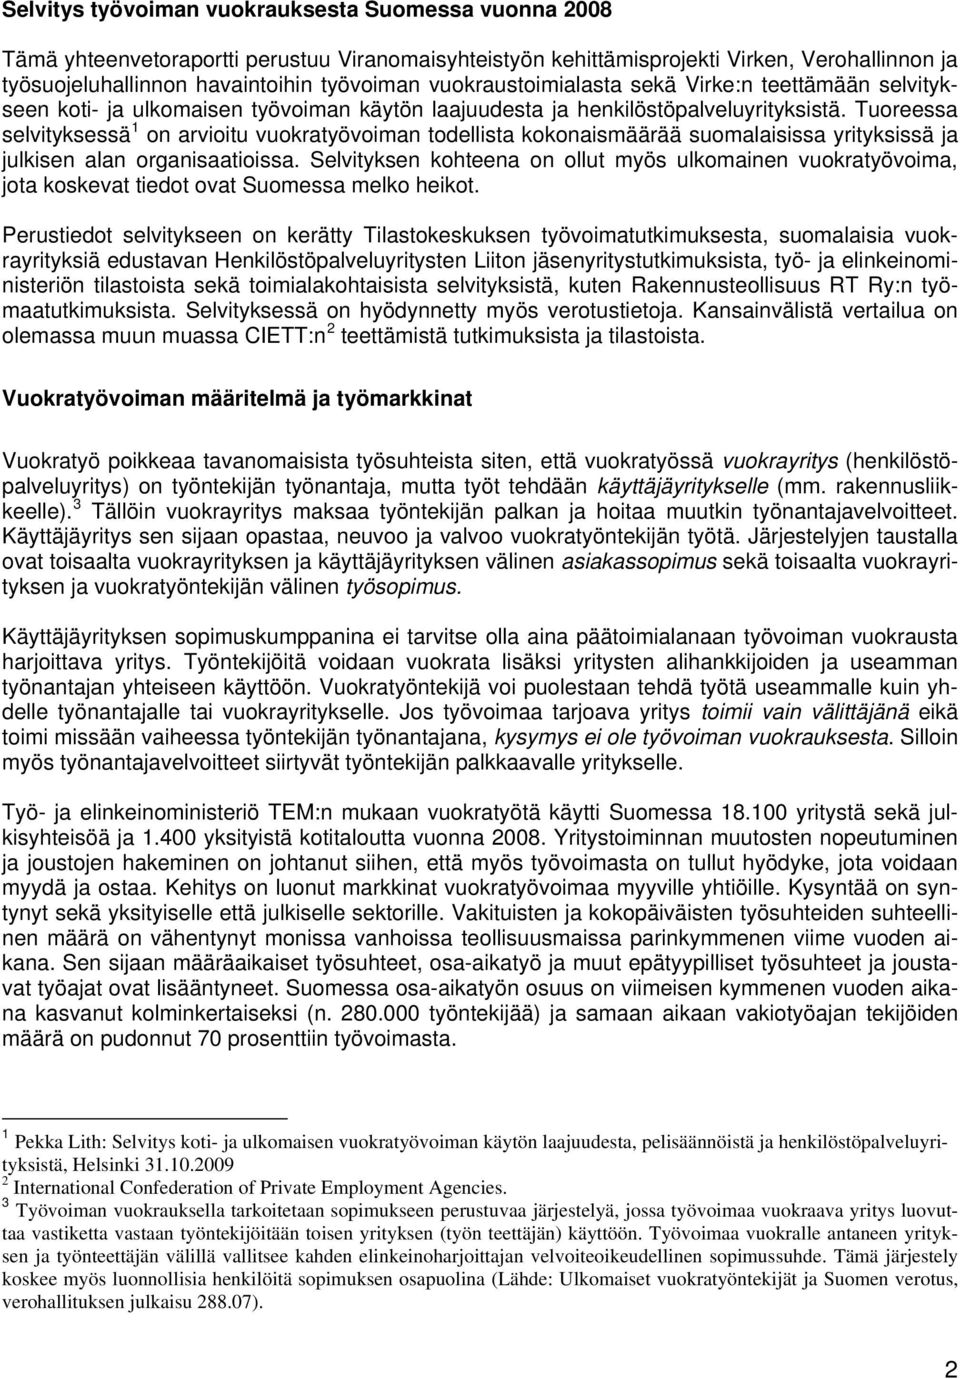 Tuoreessa selvityksessä 1 on arvioitu vuokratyövoiman todellista kokonaismäärää suomalaisissa yrityksissä ja julkisen alan organisaatioissa.